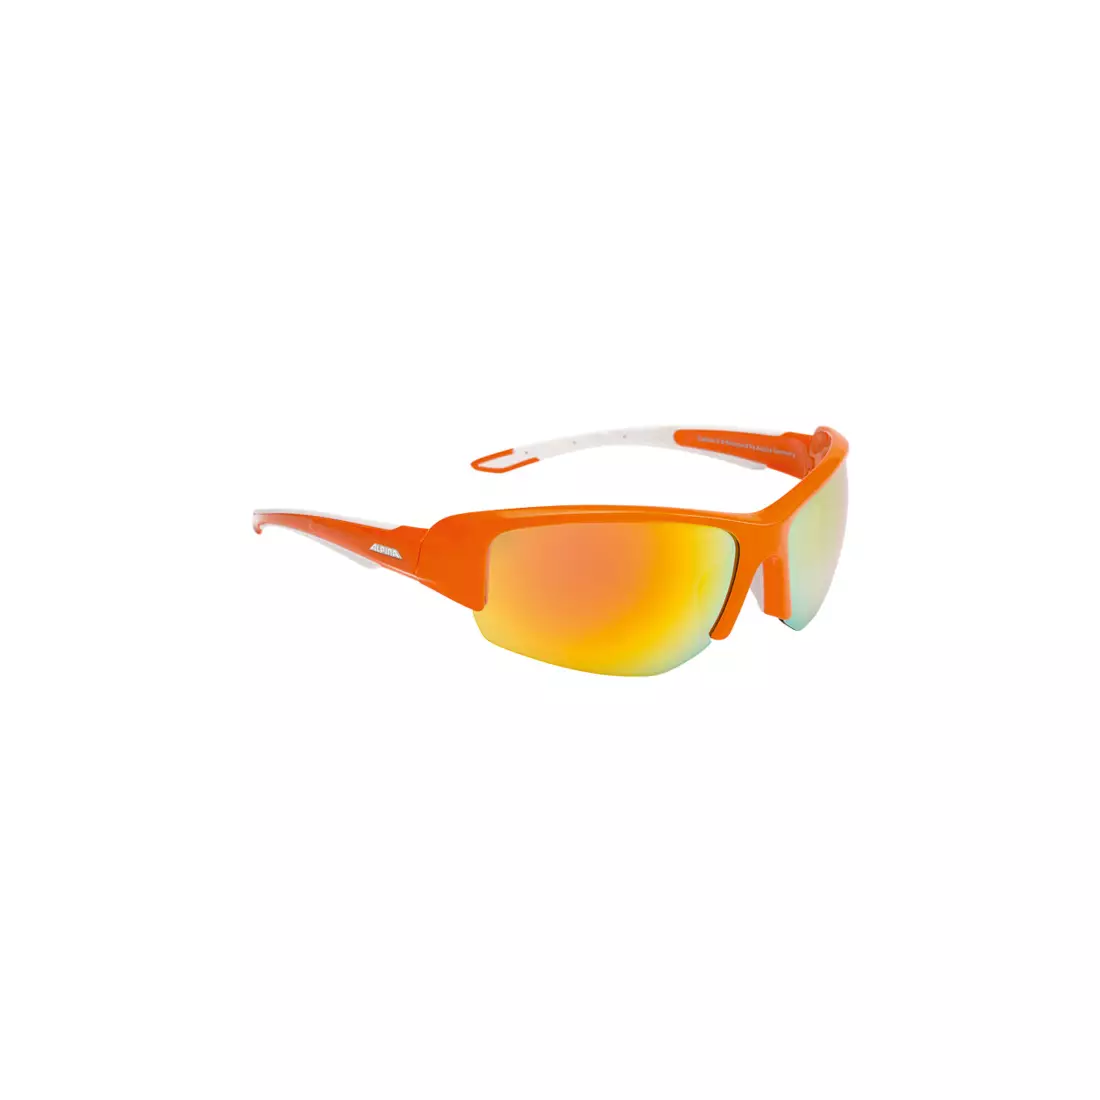 ALPINA - CALLUM 2.0 sportszemüveg - narancs-fehér / narancssárga kerámia tükörüveg.